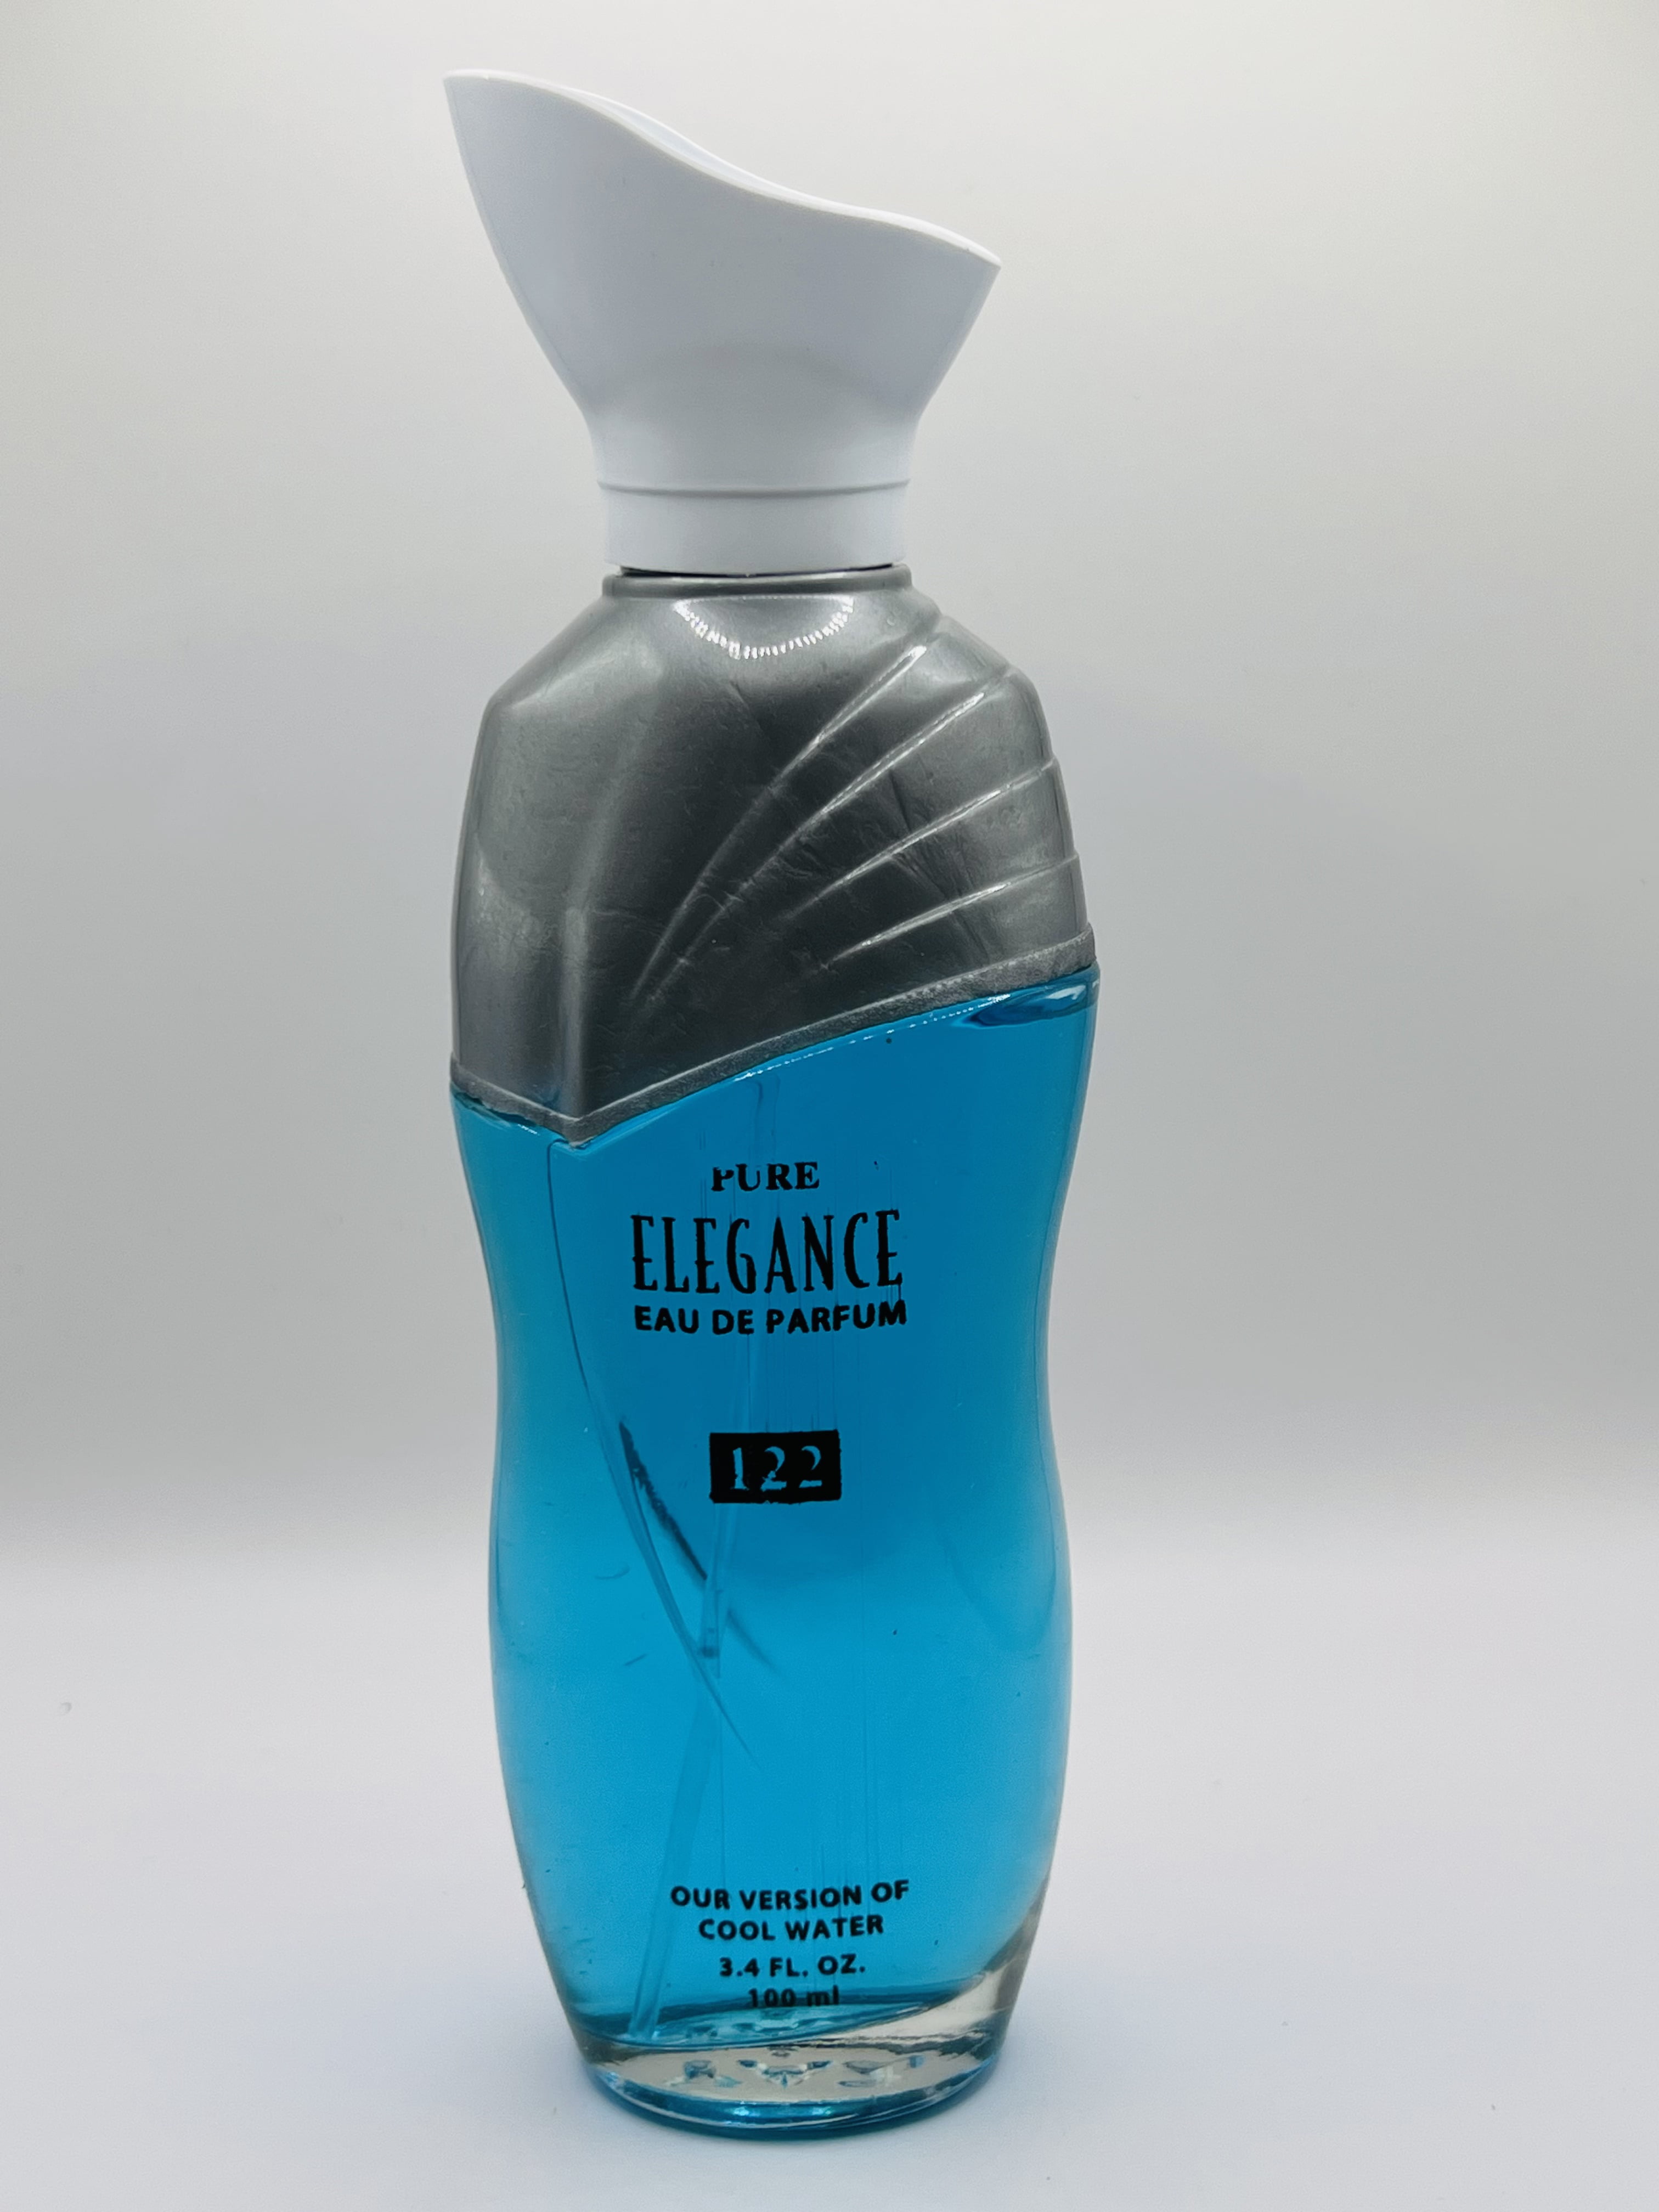 PURE ELEGANCE 122 Cool Designer Inspired Eau Parfum pour femmes Perfume Spray fl oz. Walmart.com